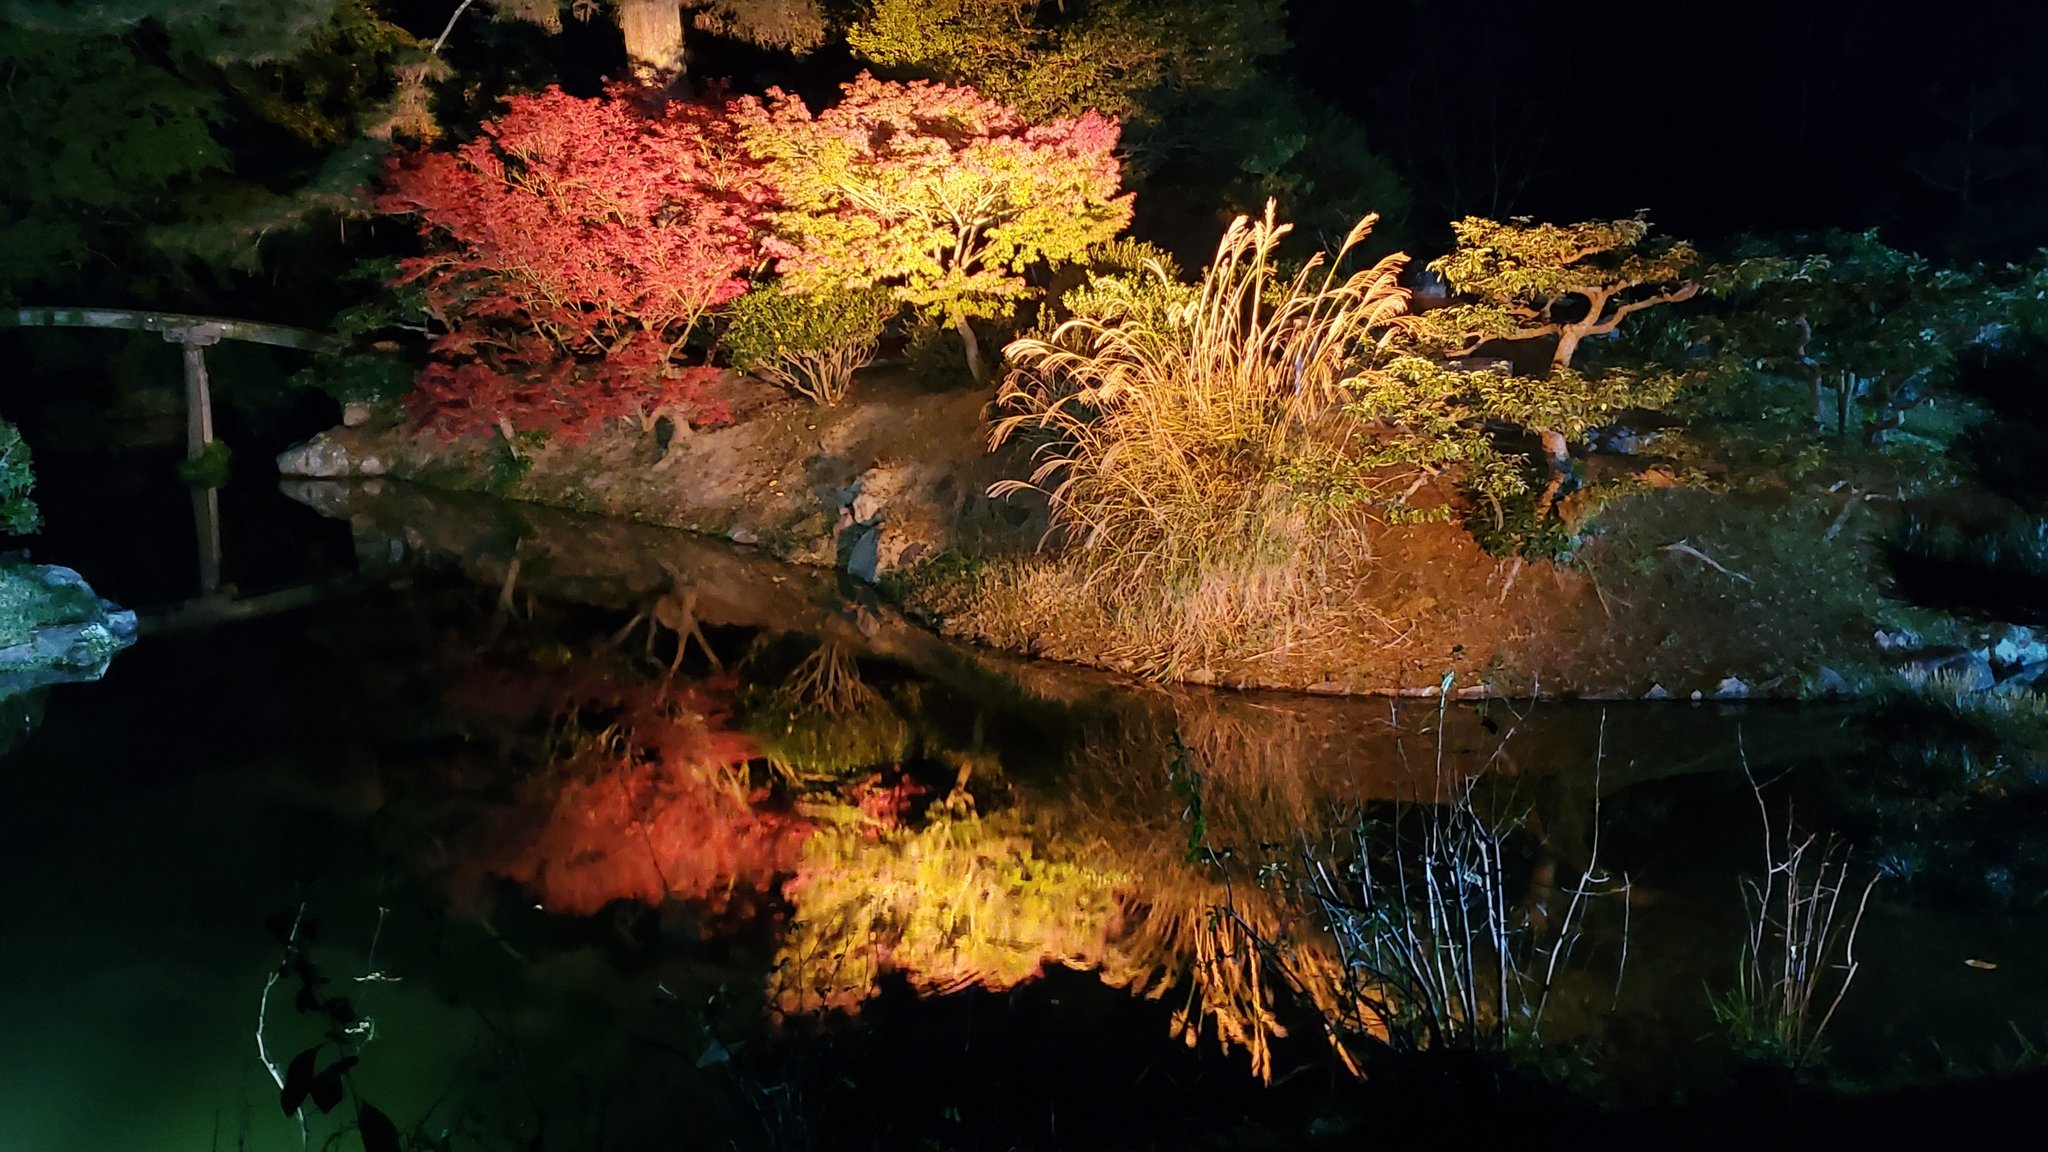 ぴろぴっぴ 昨日のお出かけ 高松市 栗林公園 にて 秋のライトアップです 昨日から始まったので 早速見に行って来ました 初日だったせいか そこまでお客さんも多くなく ゆっくり見て癒されました 香川県 栗林公園 紅葉 ライトアップ